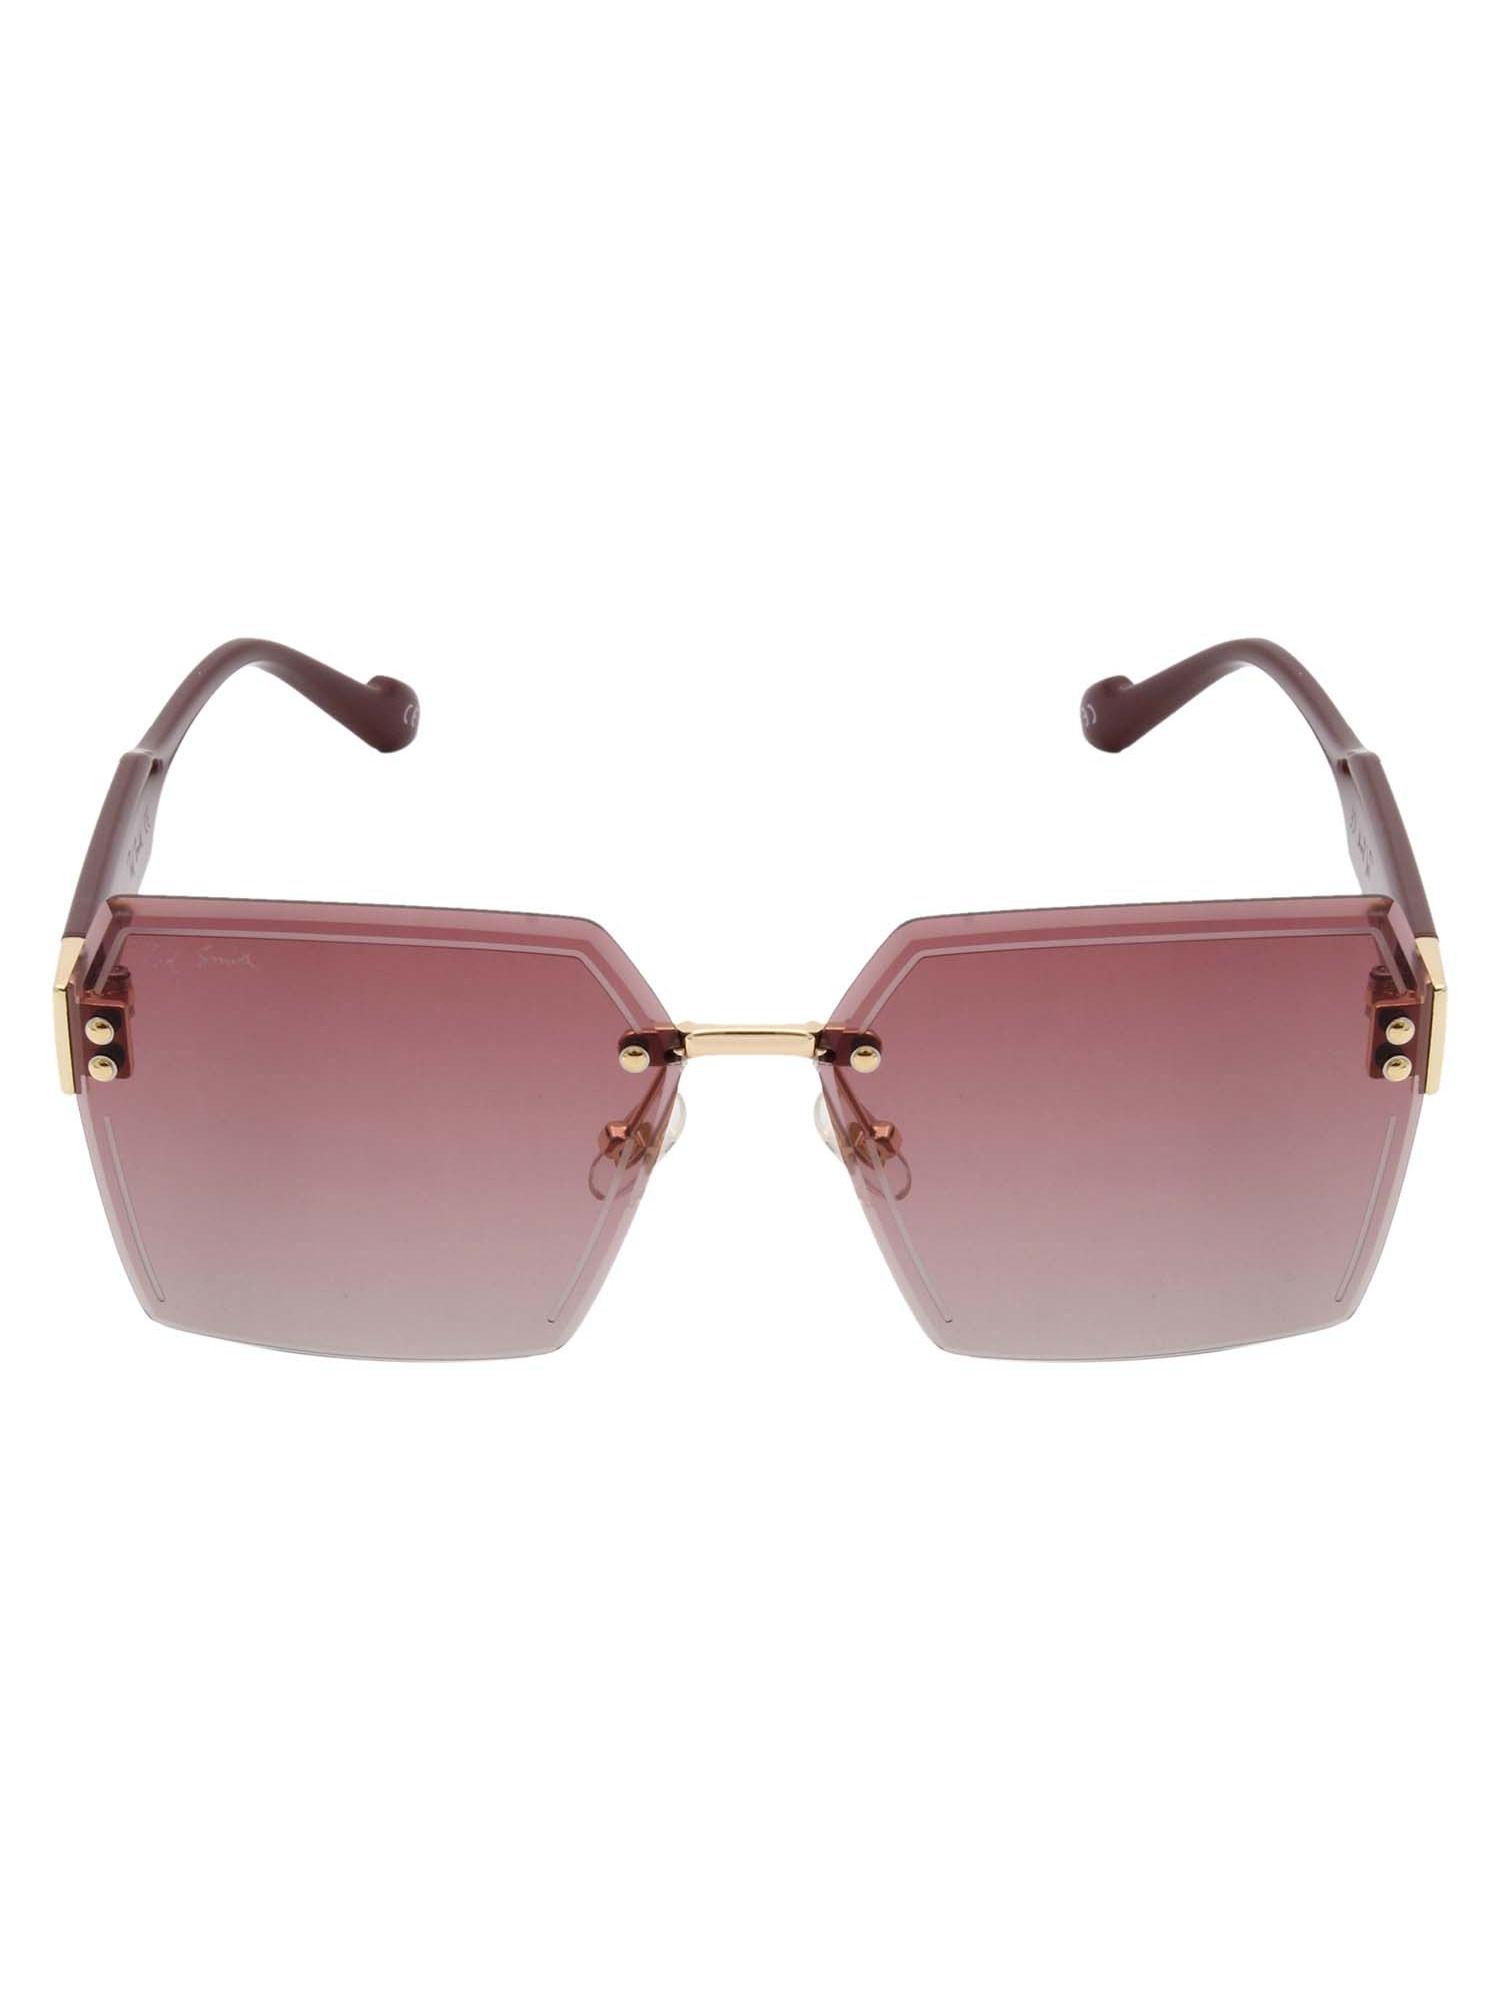 square sunglasses in pink frame hexon2 for men & women